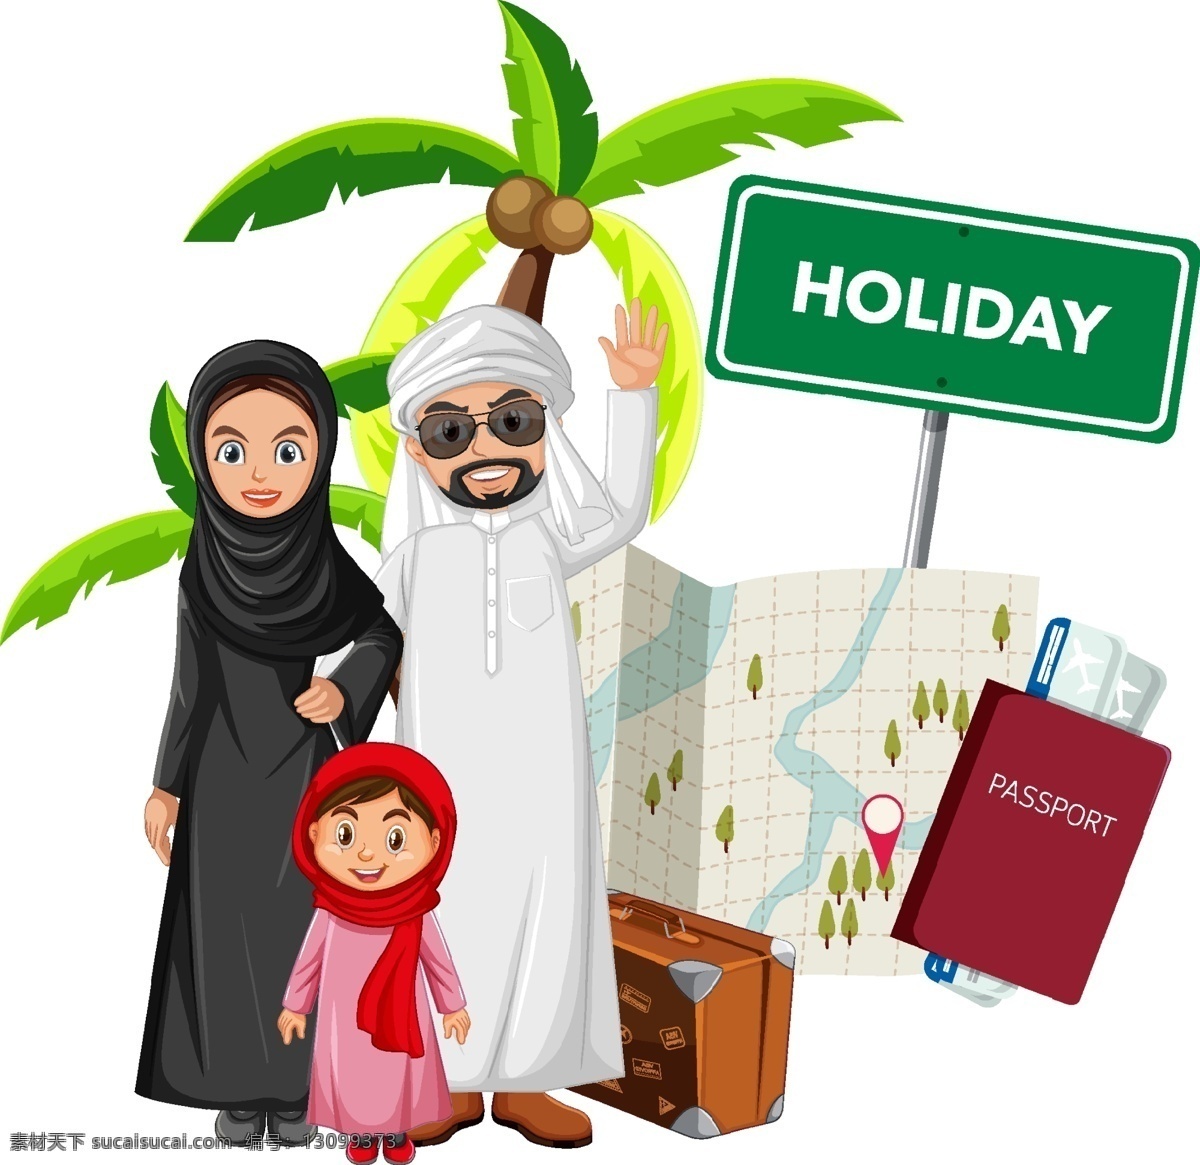 穆斯林 家庭 人物图片 穆斯林儿童 民族 夫妻 阿拉伯人 卡通人物 手绘人物 儿童 小孩 一家人 国外 节日 宗教信仰 卡通设计